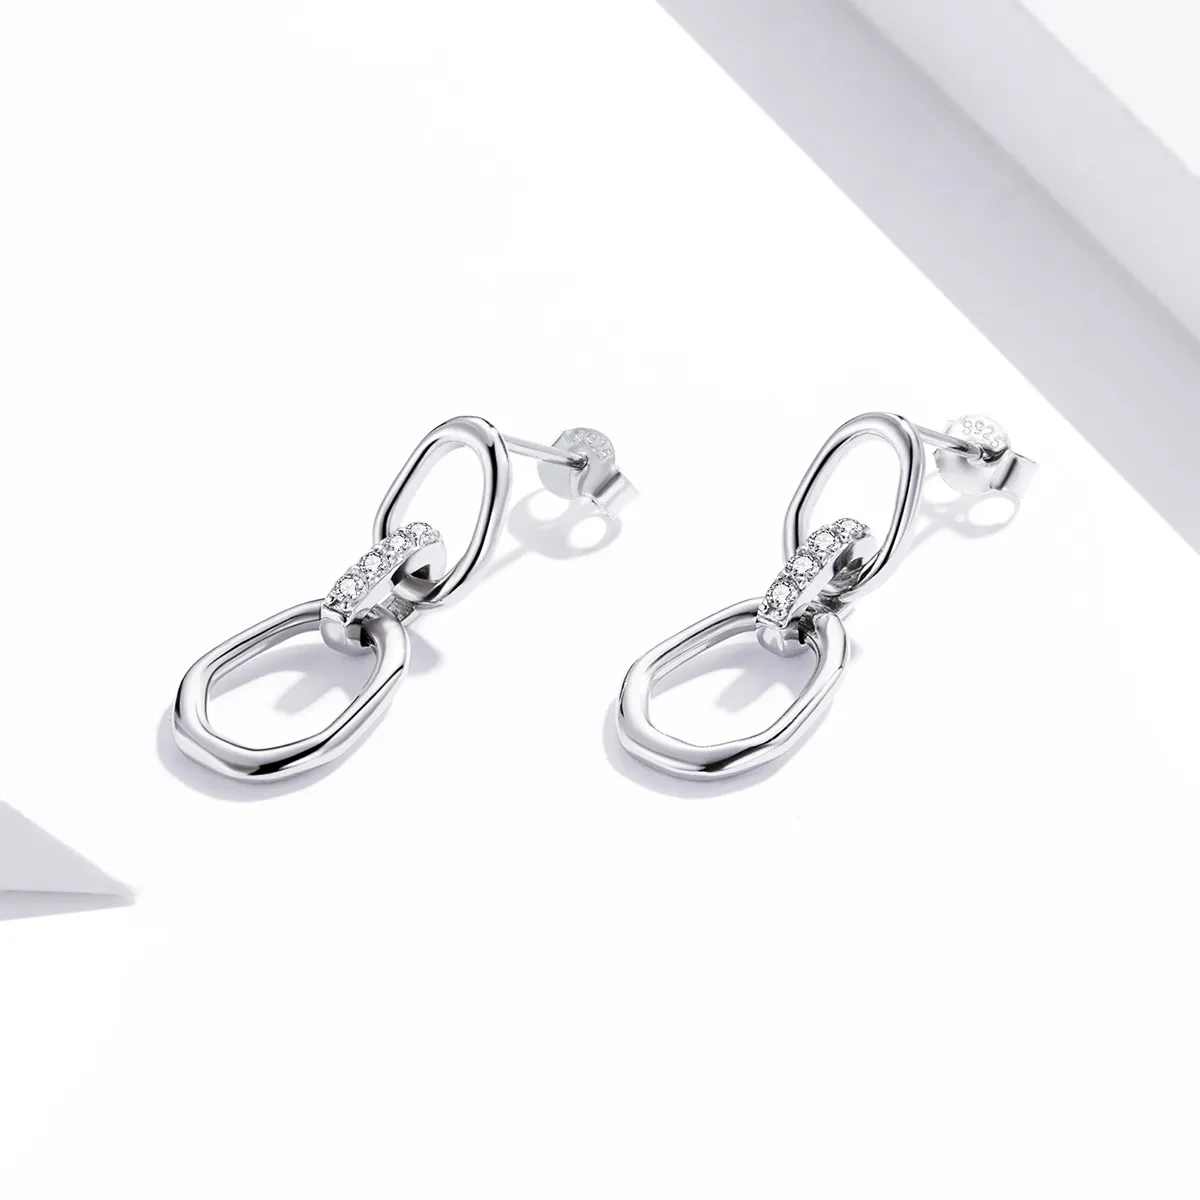 Pandora Style Silver Geometry Dangle Earrings - SCE1016